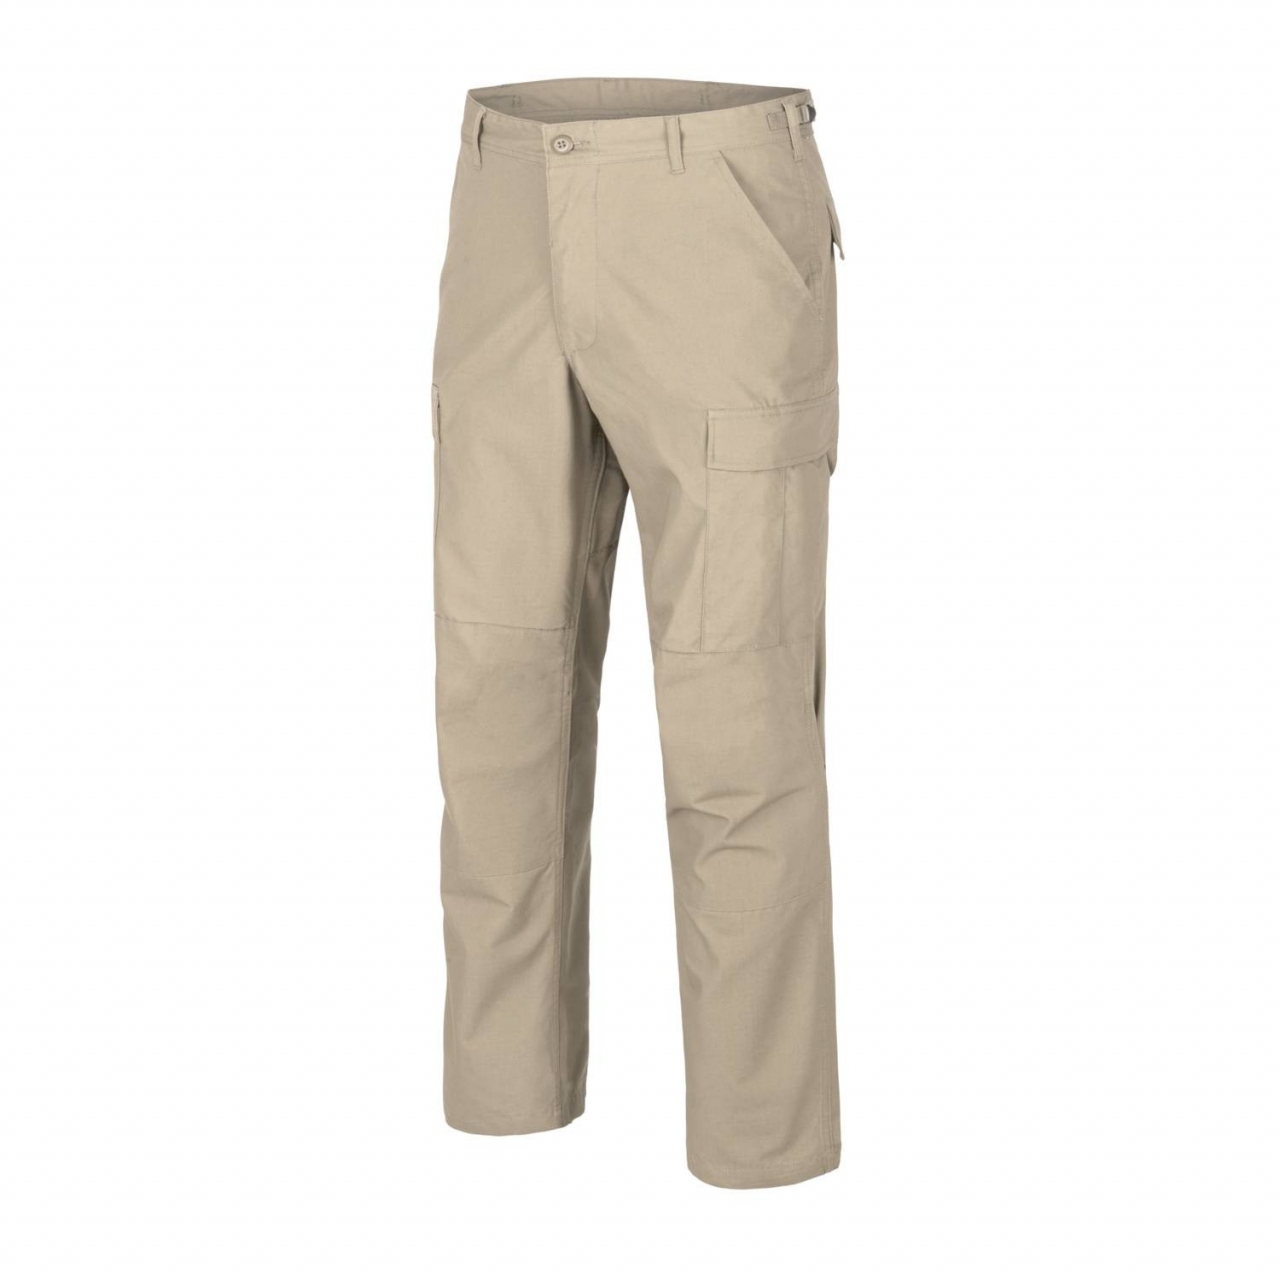 Kalhoty Helikon BDU Pants Ripstop - béžové, XL Long